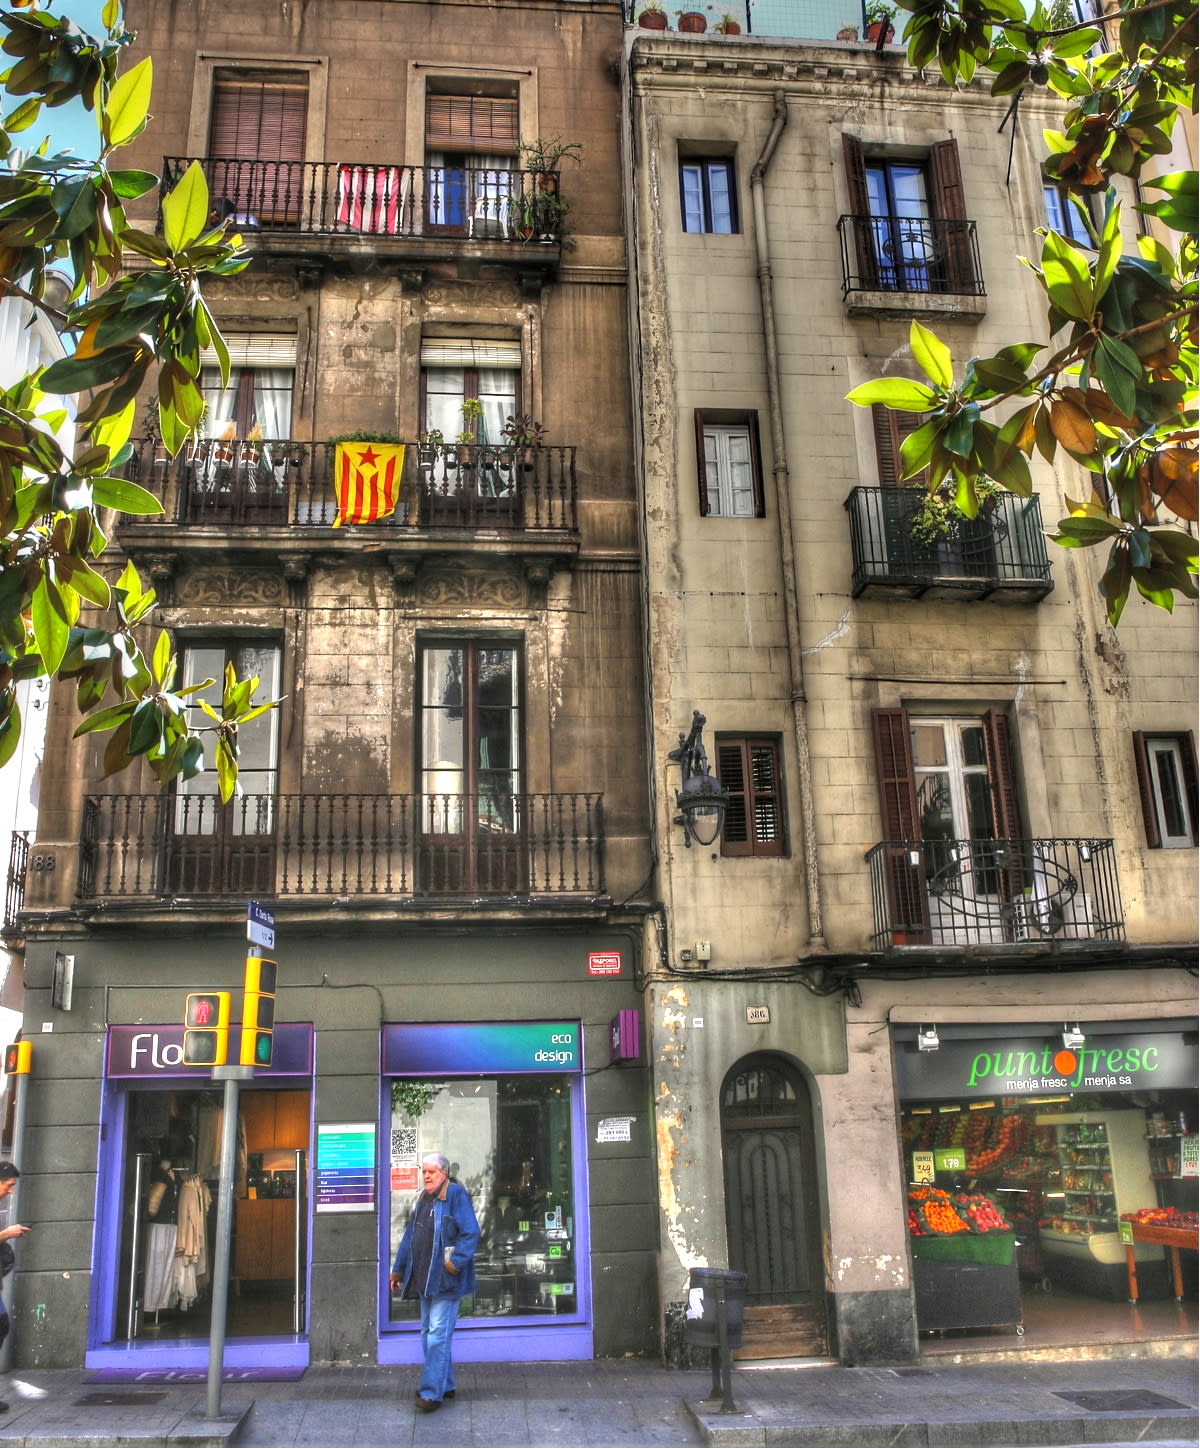 真夏の明るい街並み1 1 バルセロナ 日々是好写真 毎日の写真生活日記と紀行メモリー